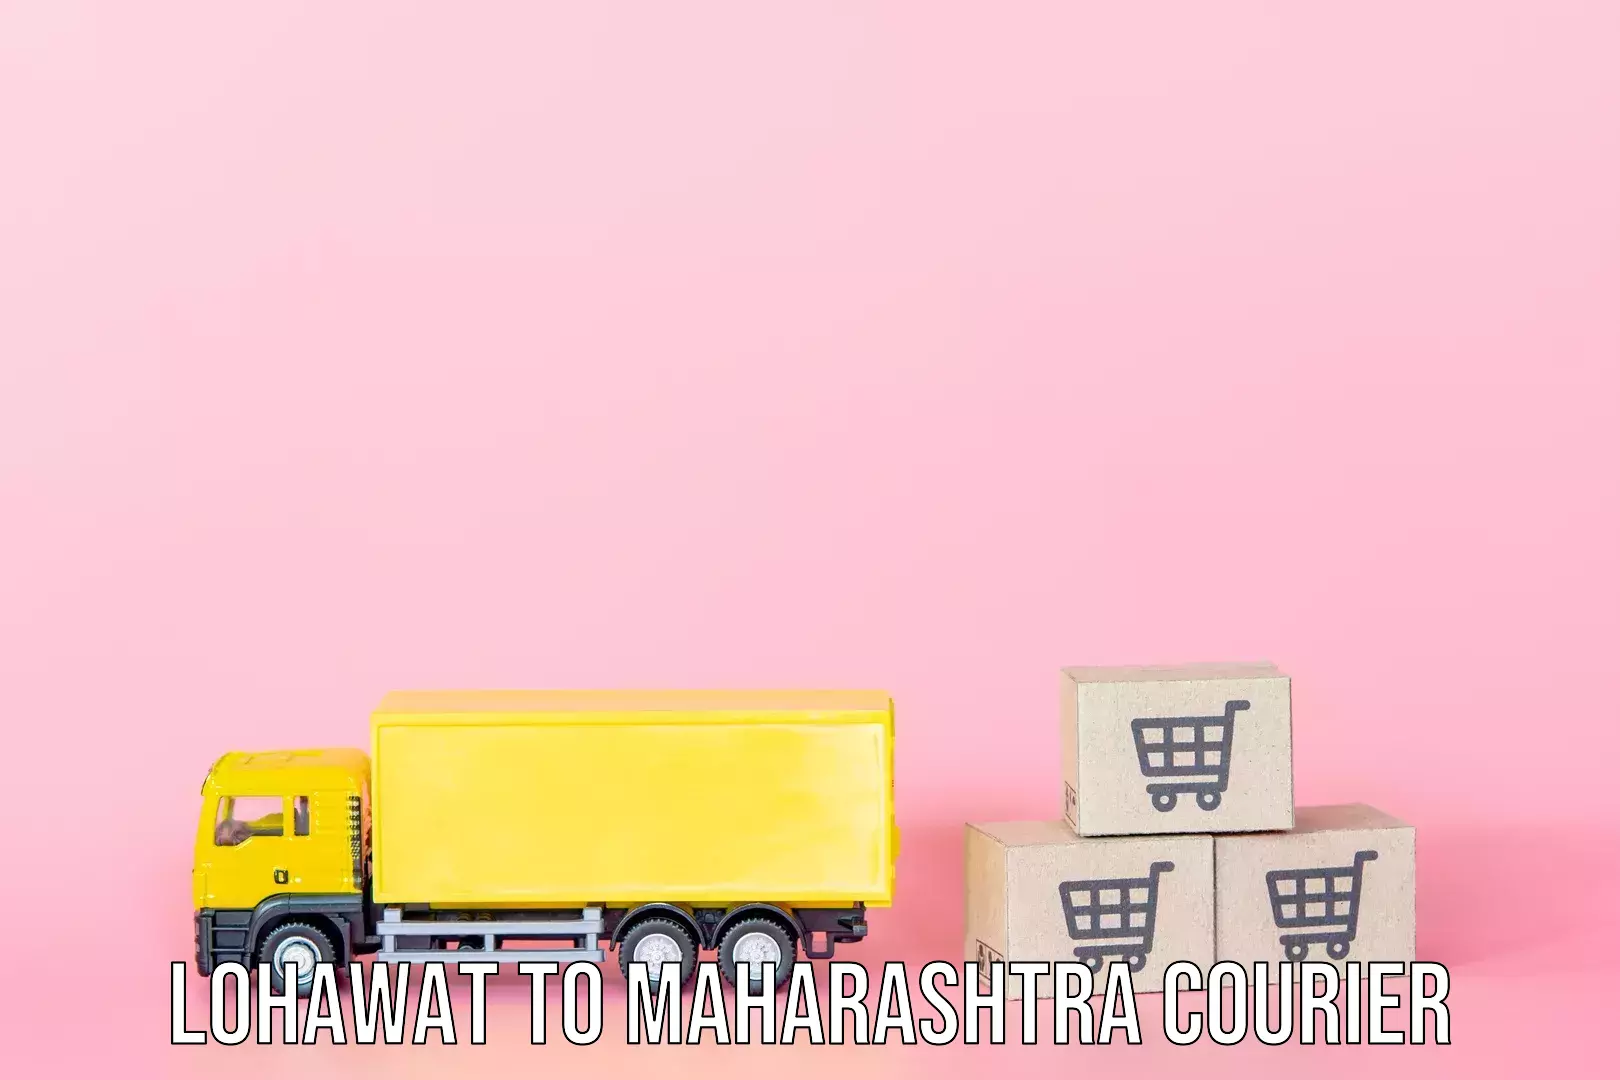 Luggage dispatch service Lohawat to Maharashtra